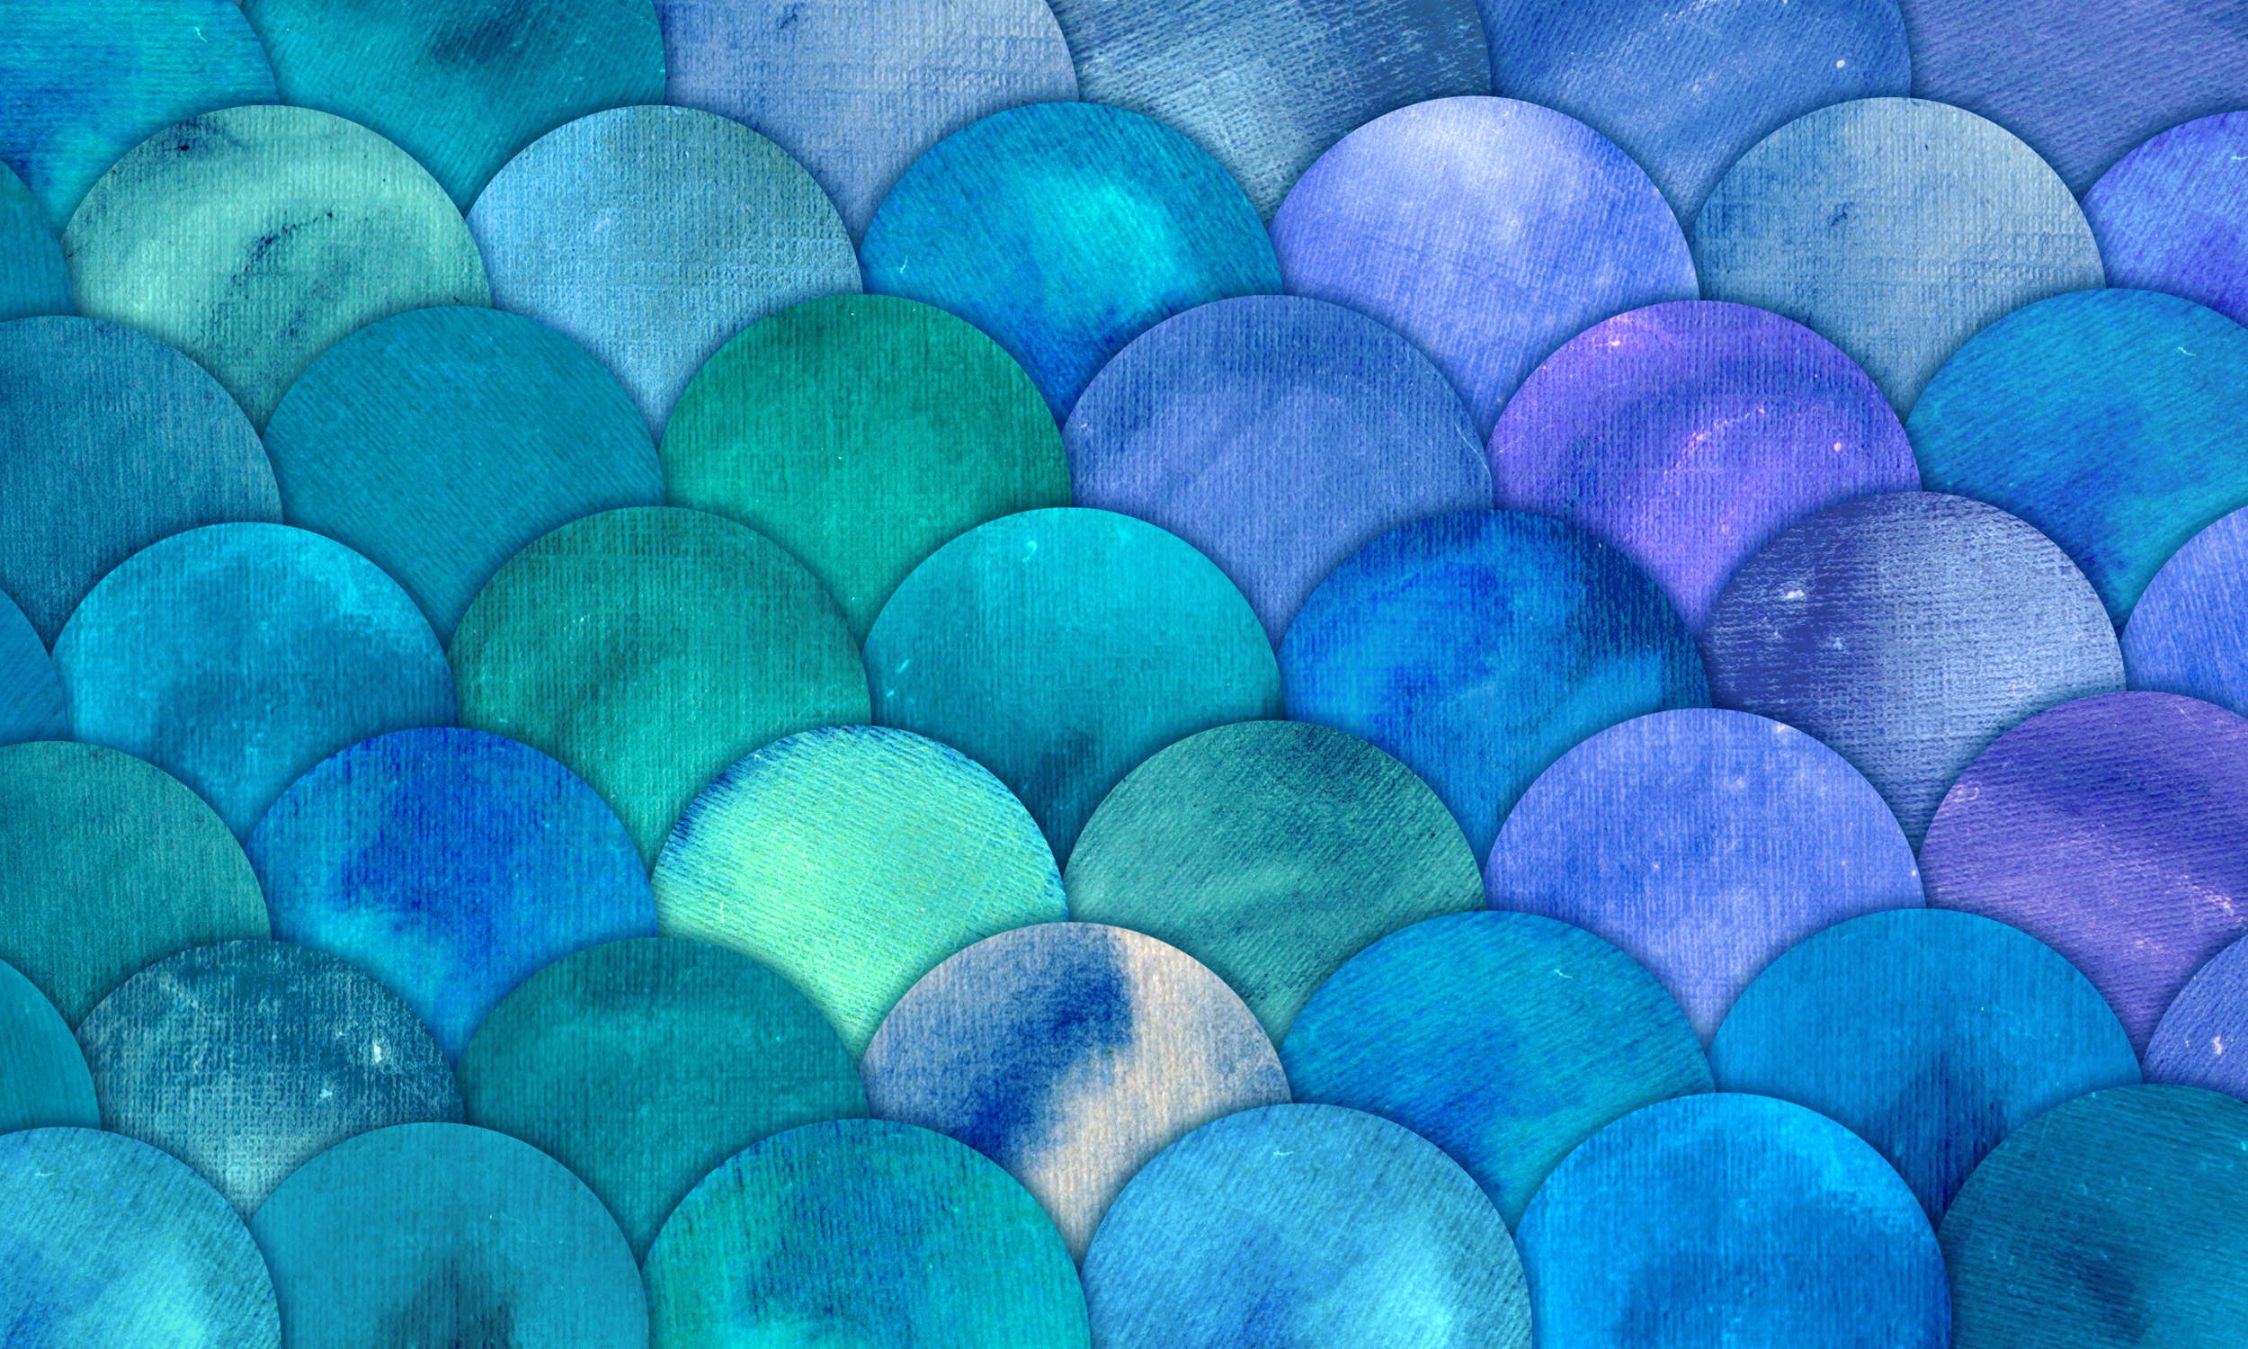             papiers peints à impression numérique avec motif écailles de poisson - intissé lisse & mat
        